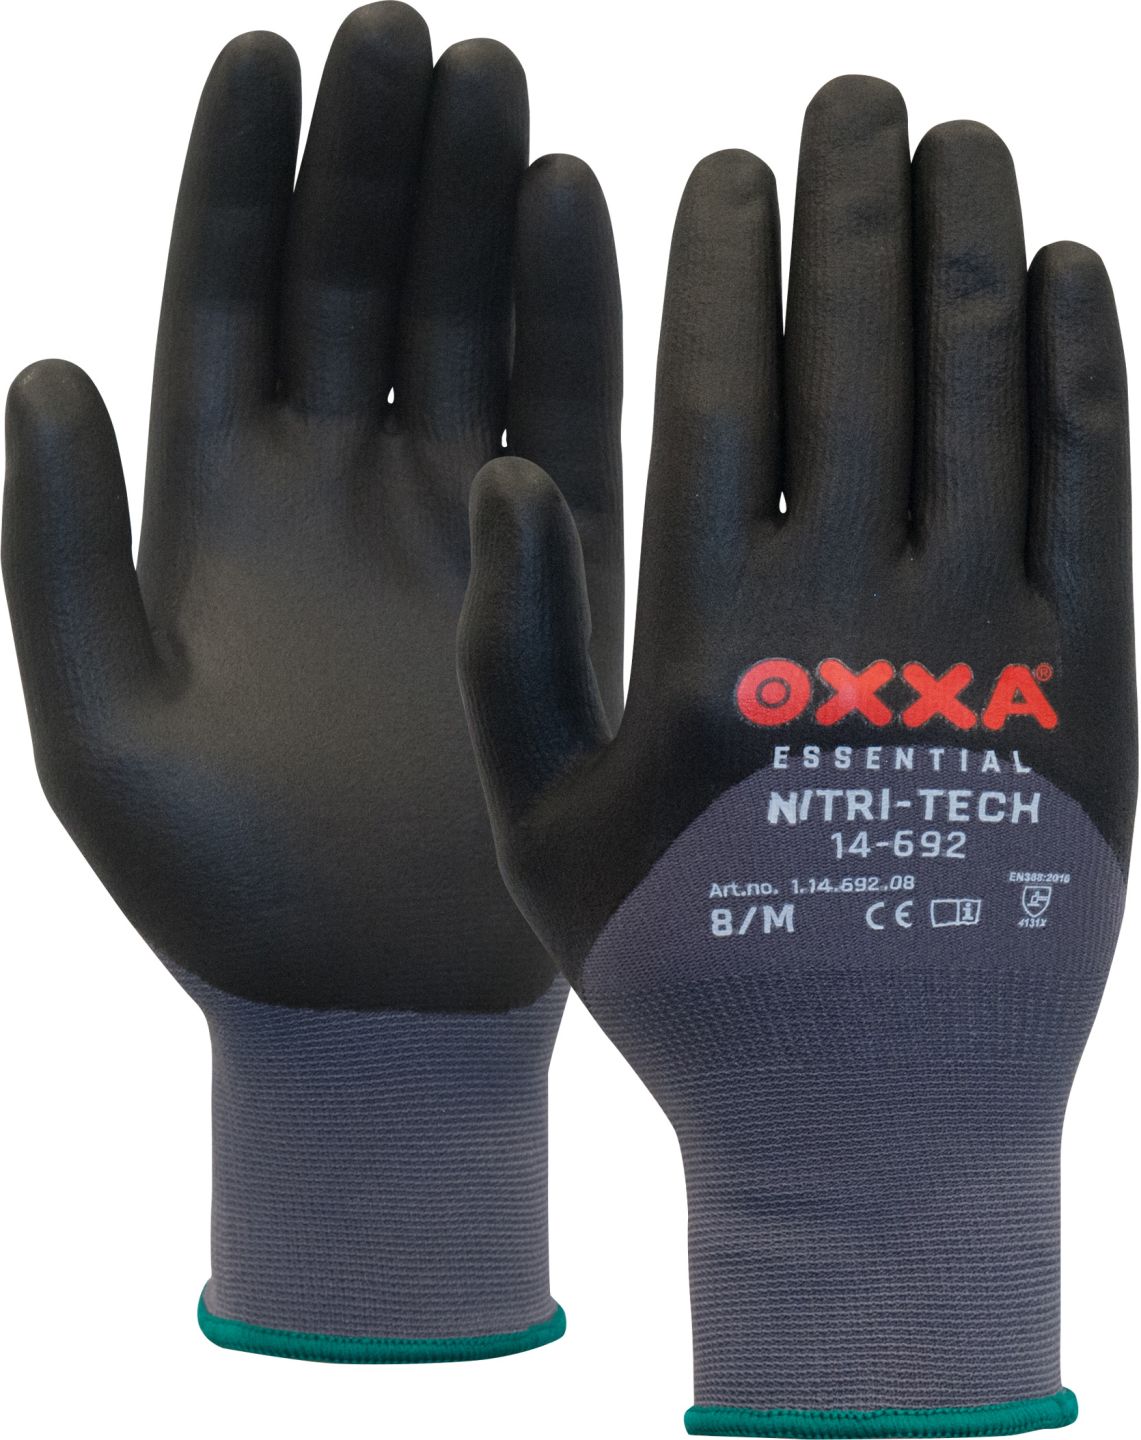 OXXA Nitri-Tech 14-692 werkhandschoenen